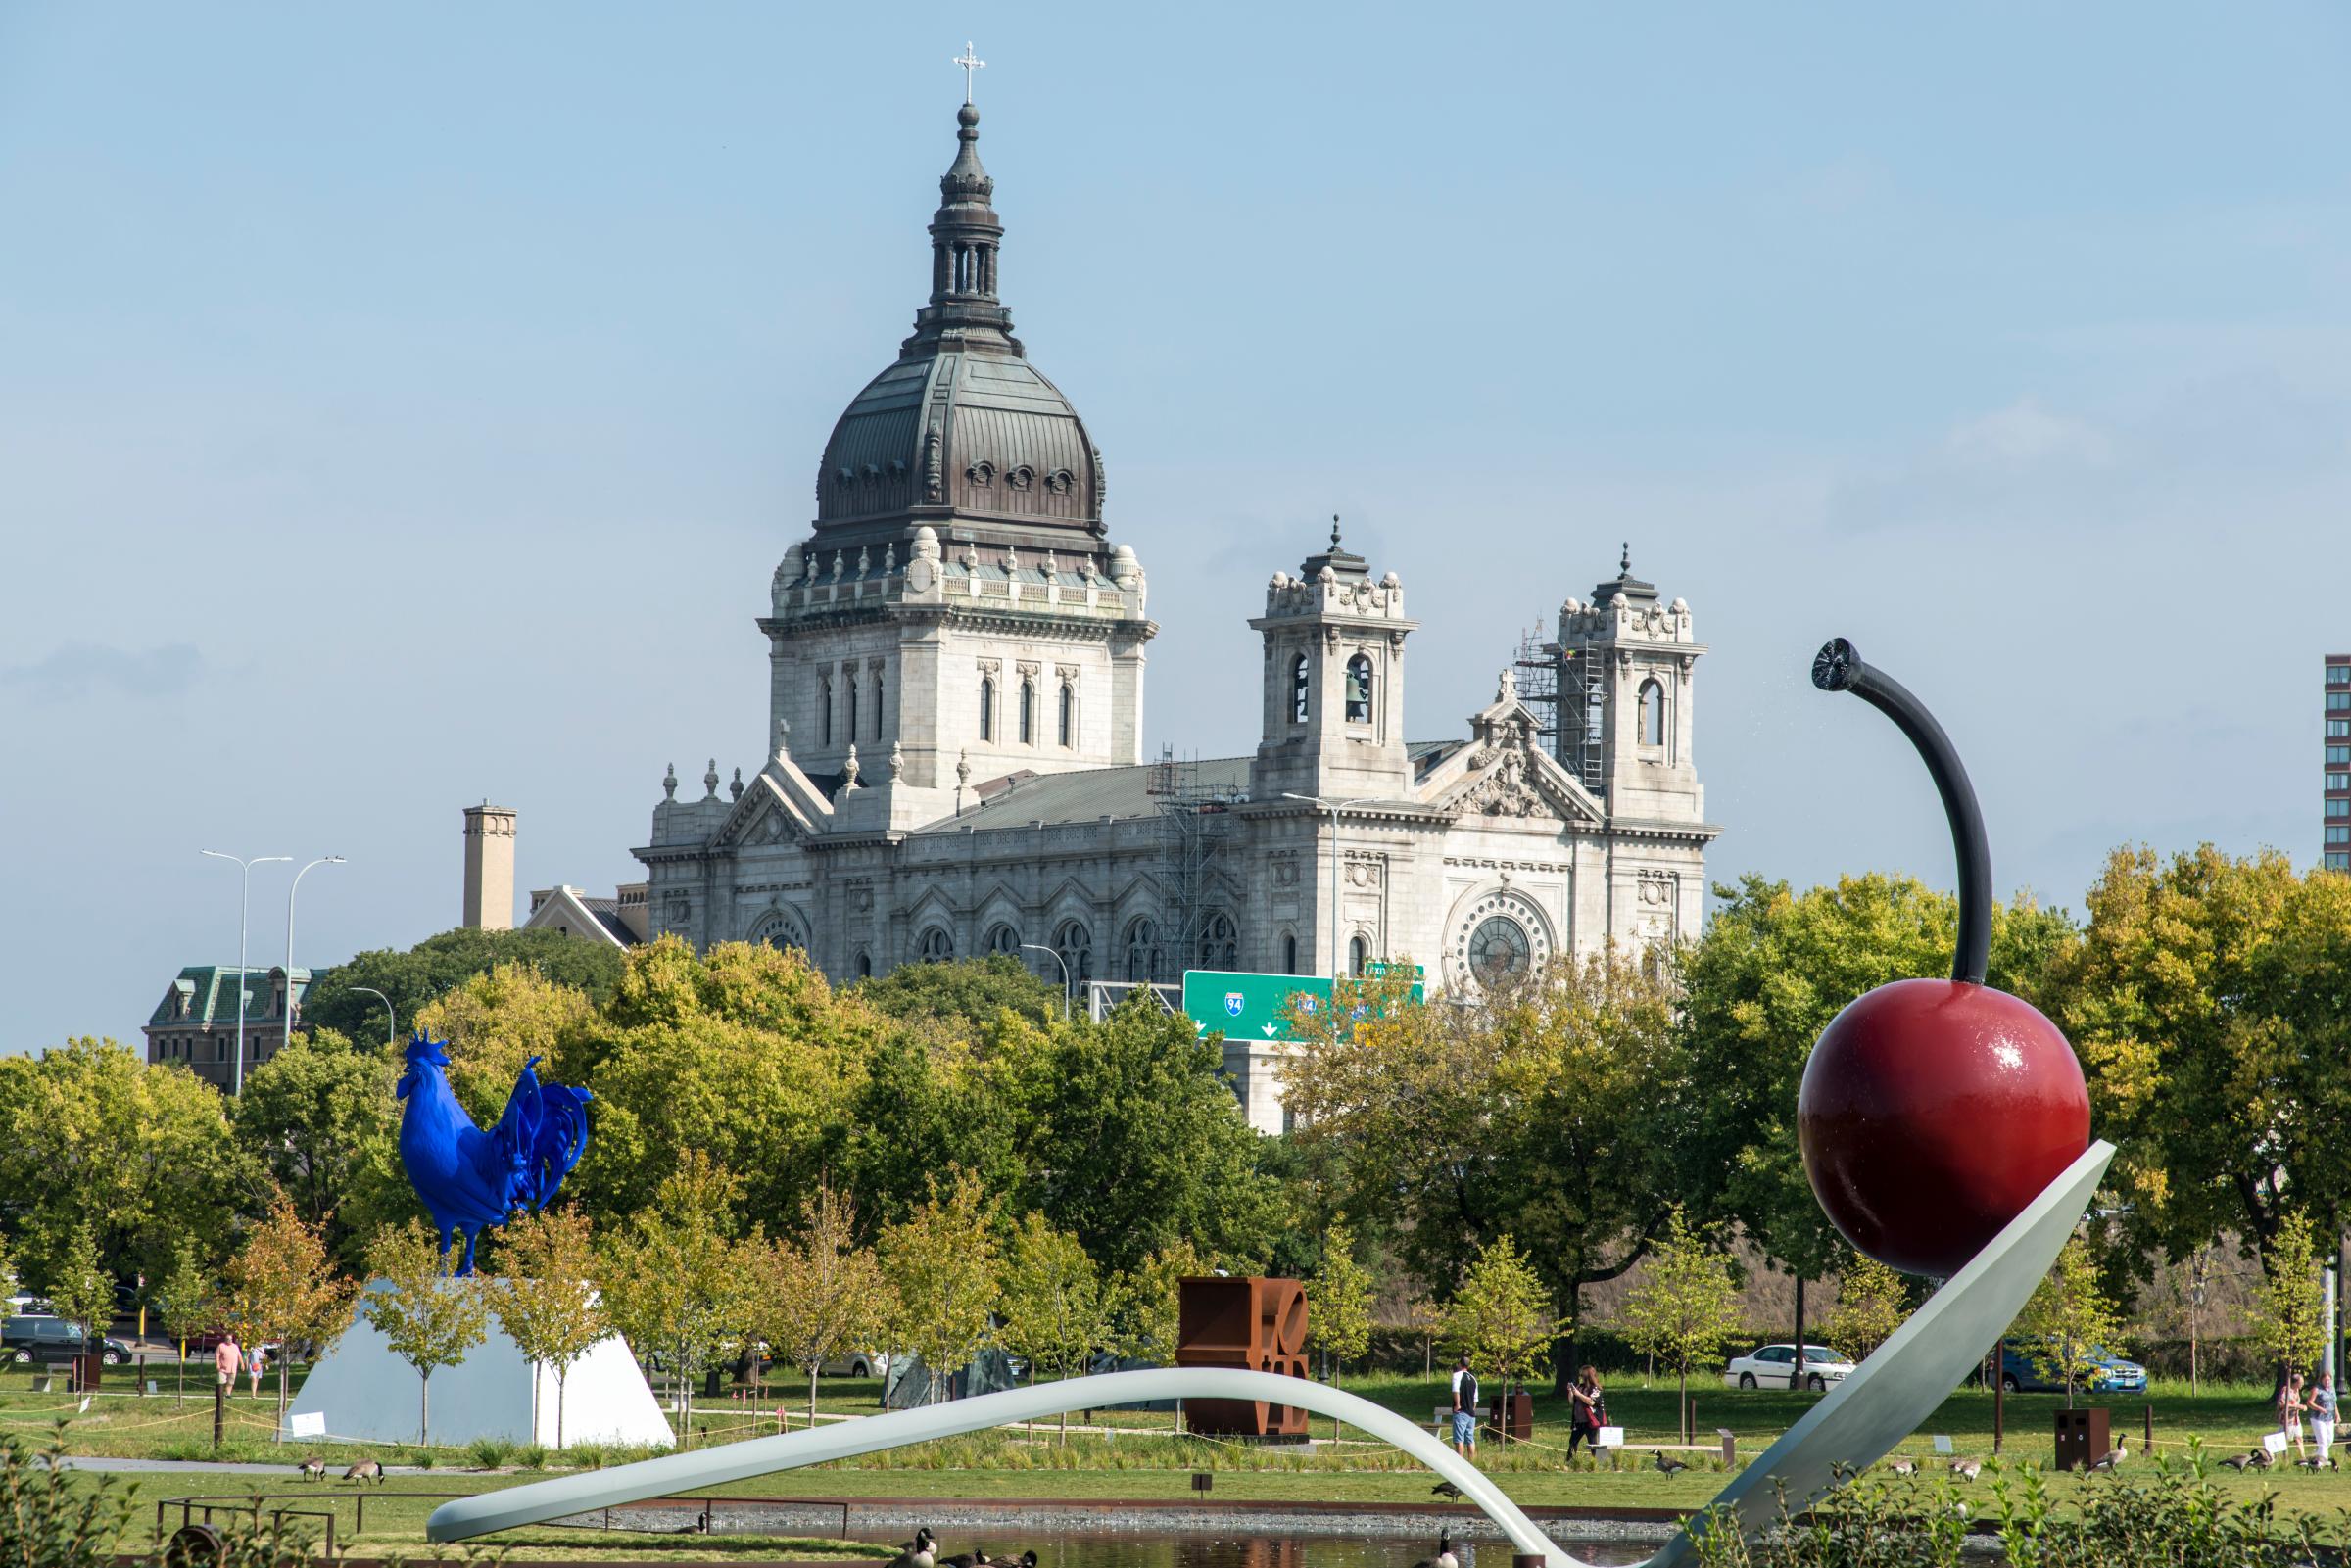 Minneapolis Sculpture Garden, The Spoonbridge and Cherry sculpture, in Minneapolis, Minnesota